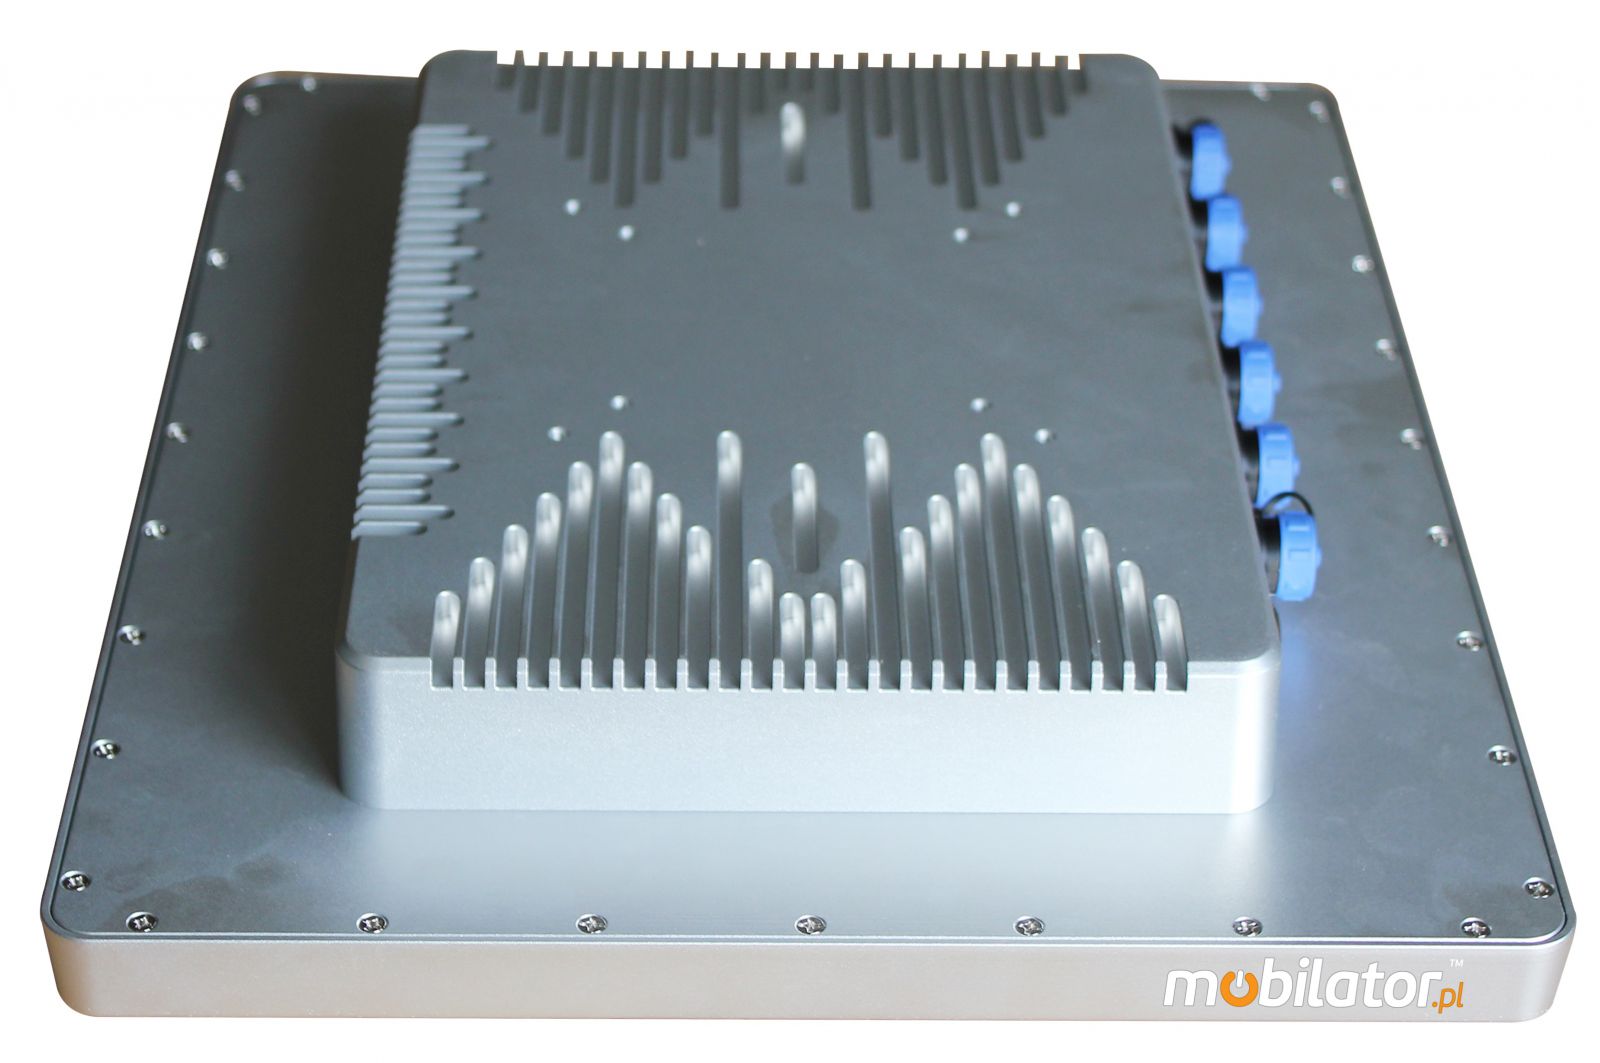 przemysłowy panel operatorski panel PC komputer przemysłowy odporny wodoodporny pyłoodporny wstrząsoodporny wzmocniony IP68 wifi